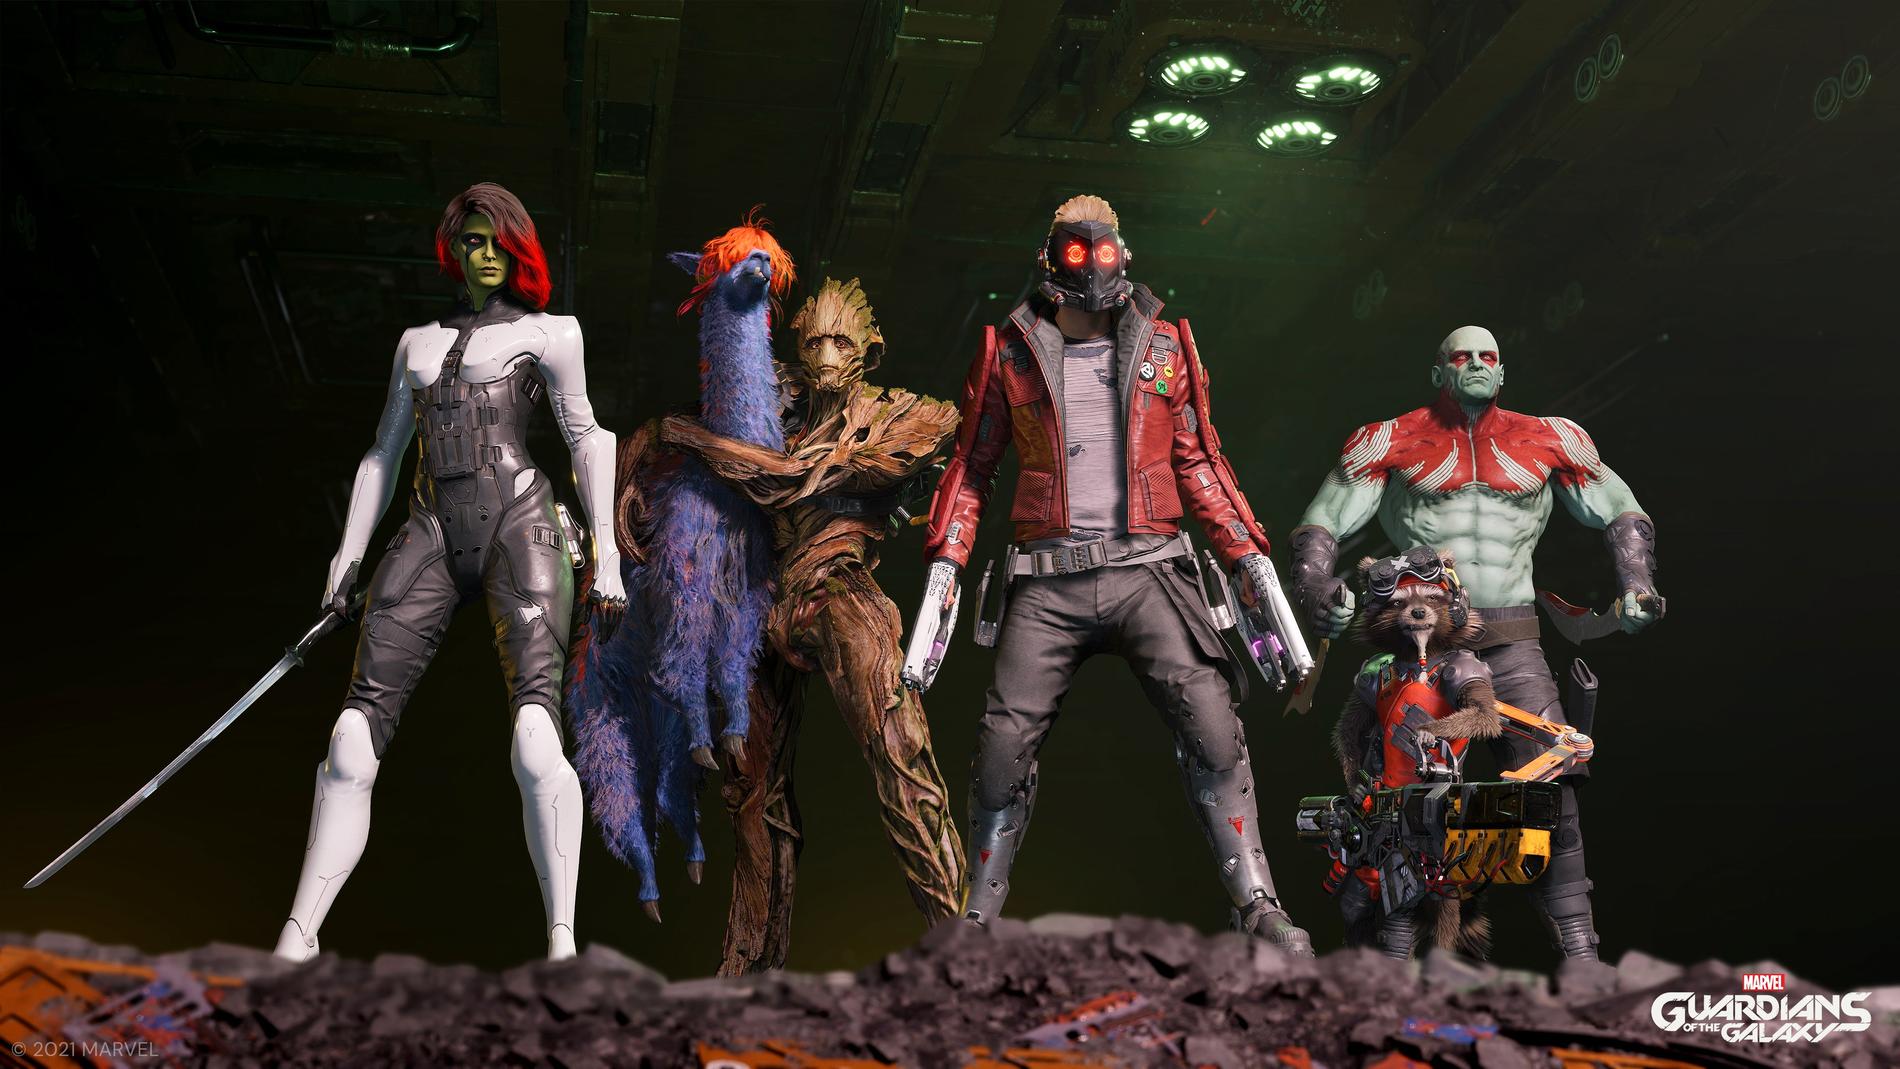 Hjältarna i spelversionen av "Guardians of the galaxy" ser annorlunda ut än de gör i filmerna. Pressbild.